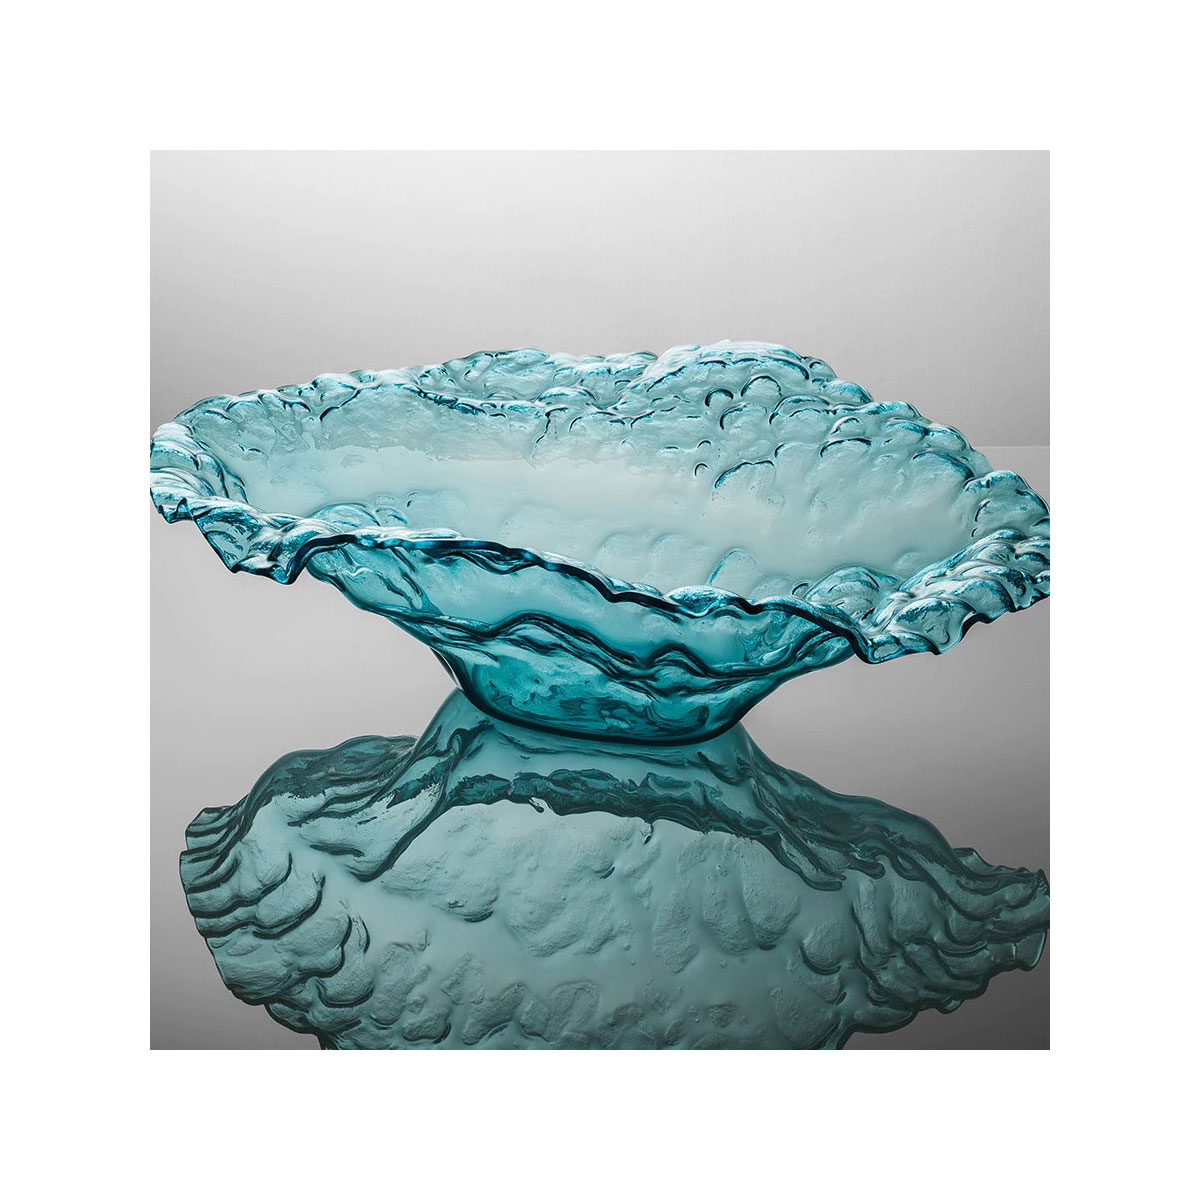 Annieglass Water Sculpture Bowl